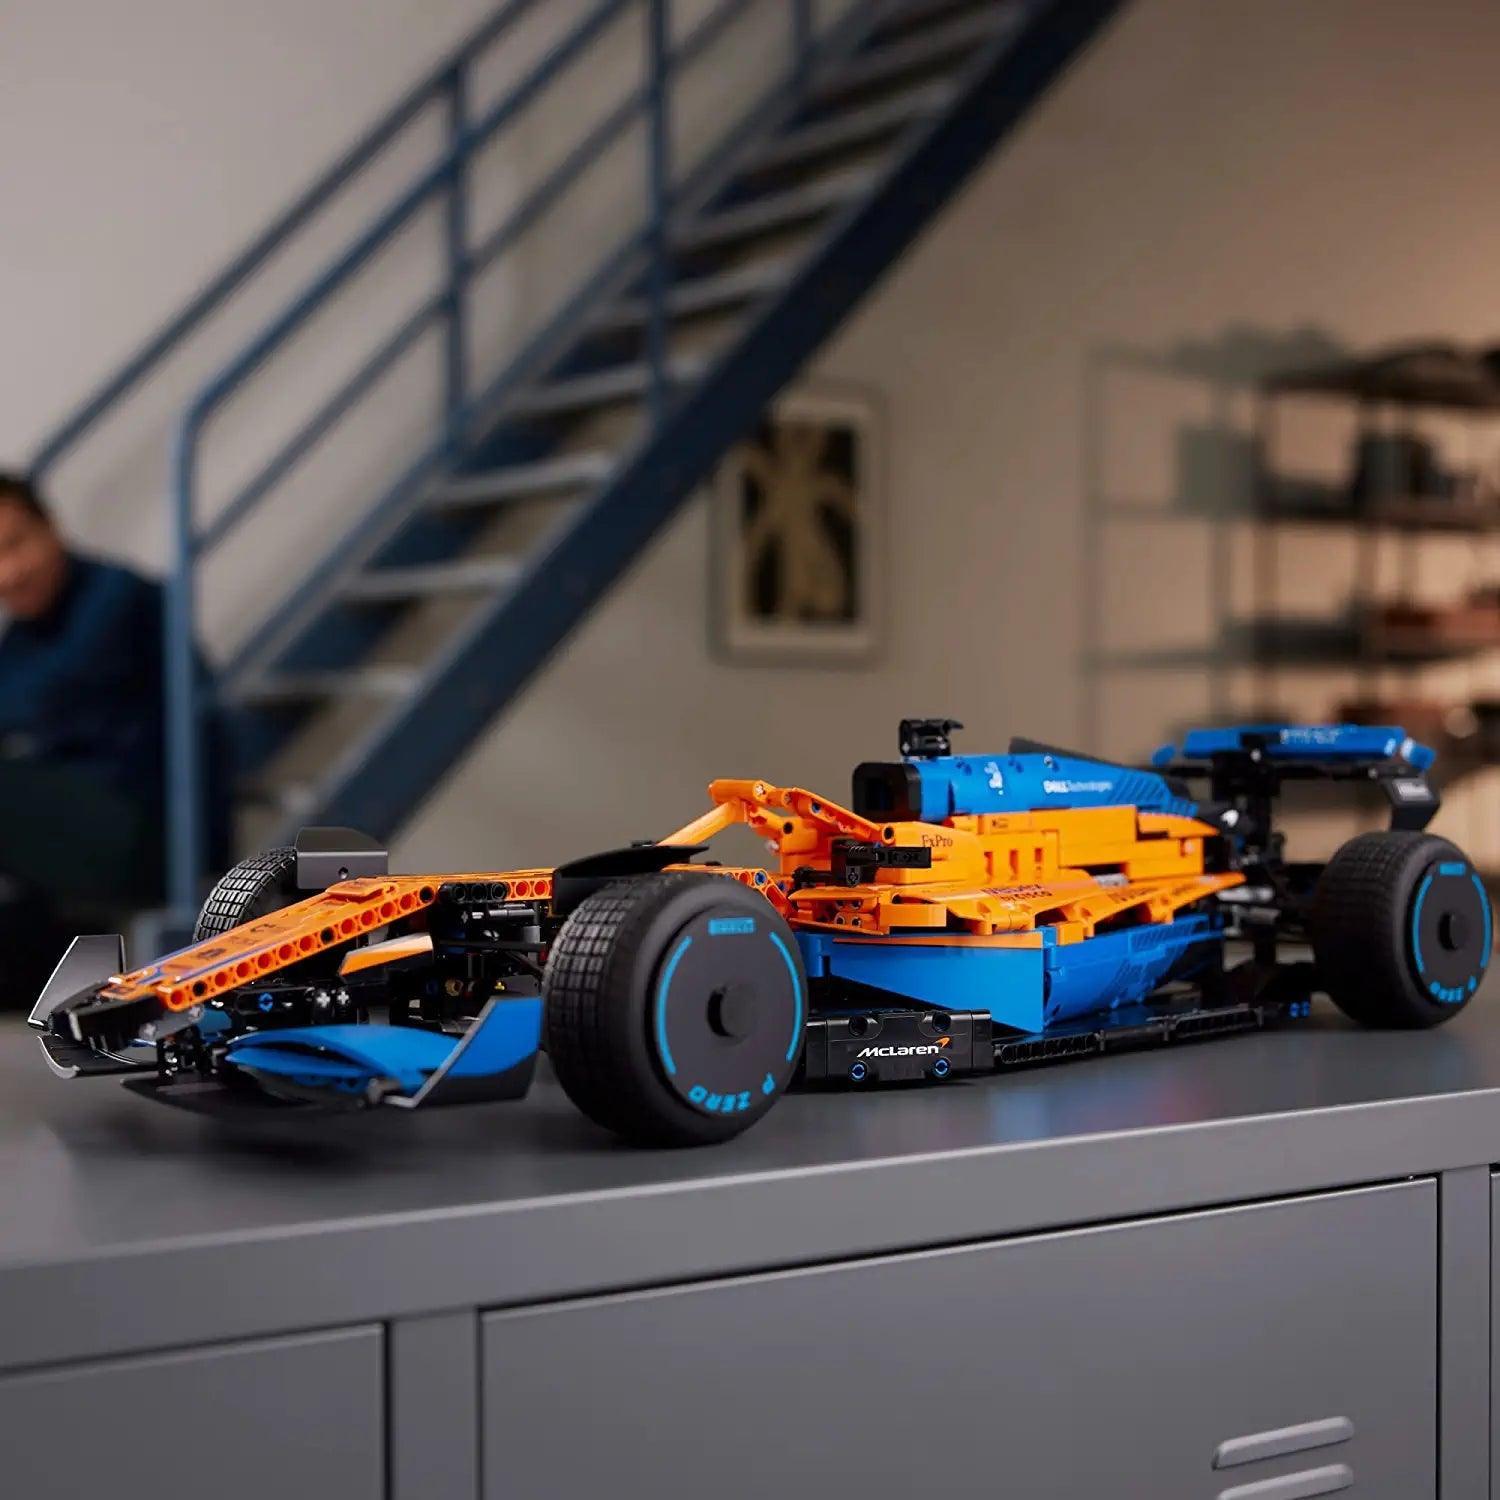 LEGO 42141 Technic McLaren Formula 1 Race Car Build a Replica Model of The 2022 McLaren Formula 1 Race Car (1,432 Pieces) - BumbleToys - 18+, 5-7 Years, Boys, LEGO, OXE, Pre-Order, Technic